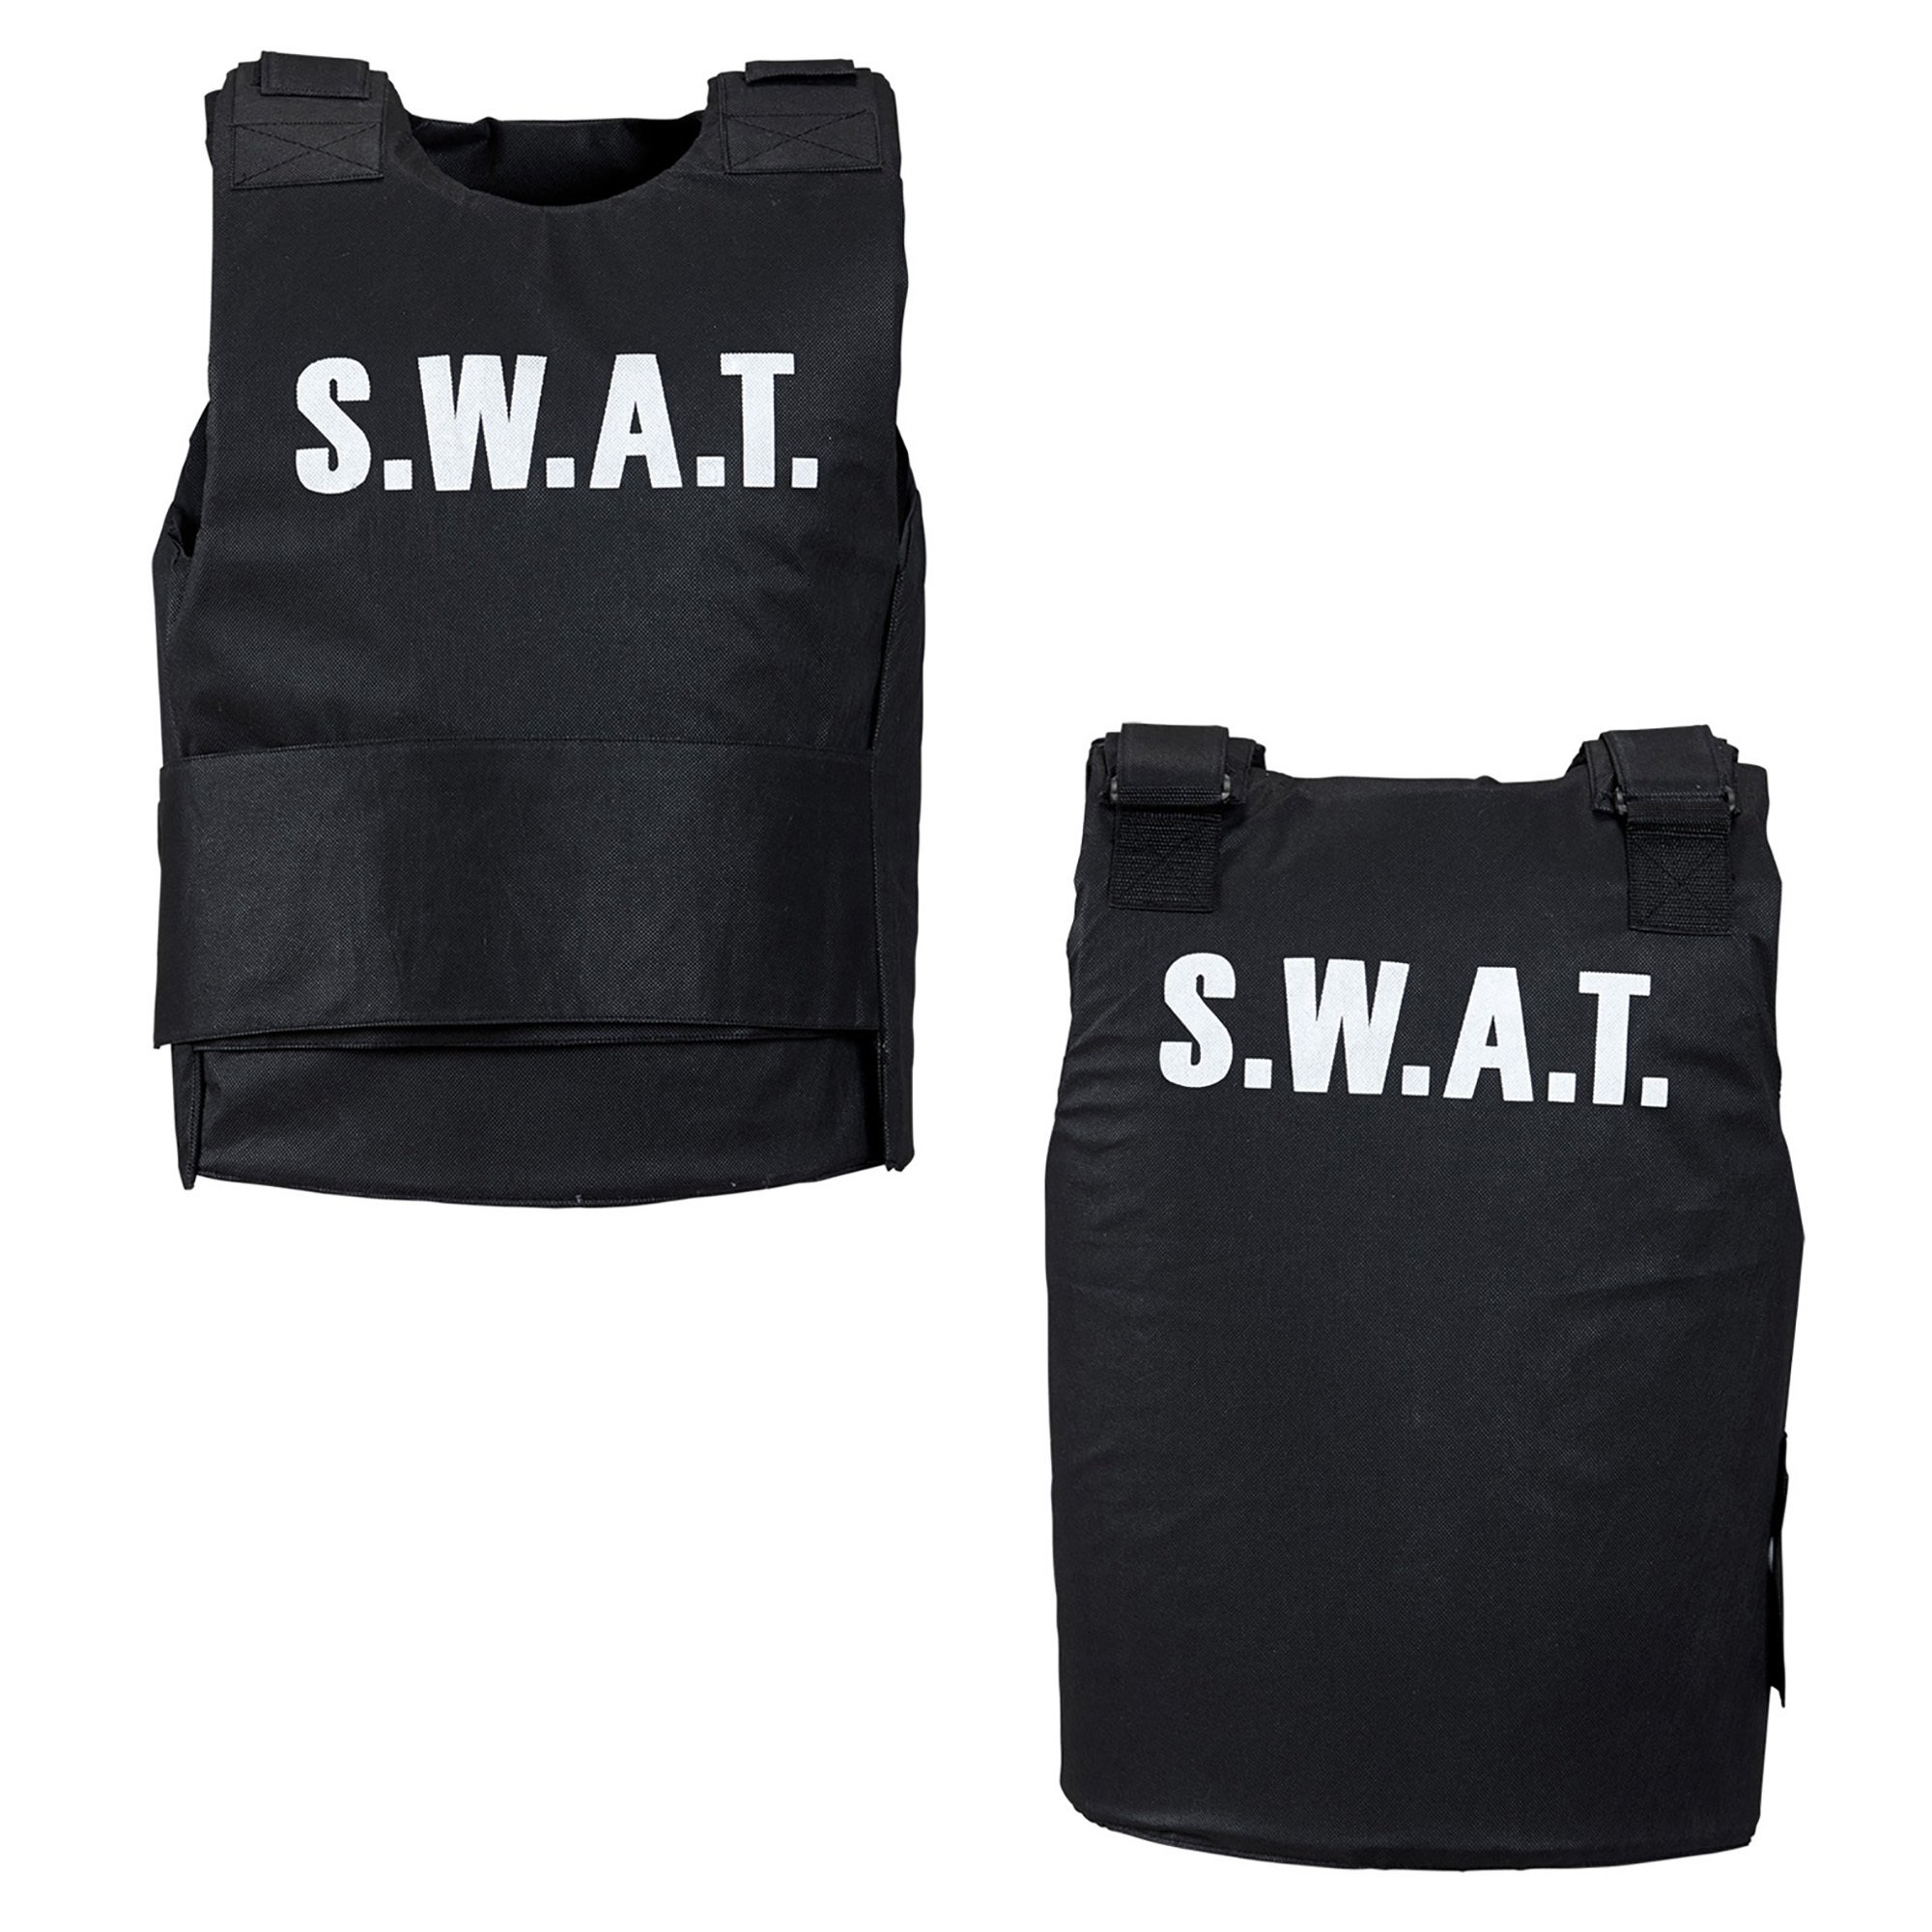 Swat vest kind S.W.A.T voor carnaval 